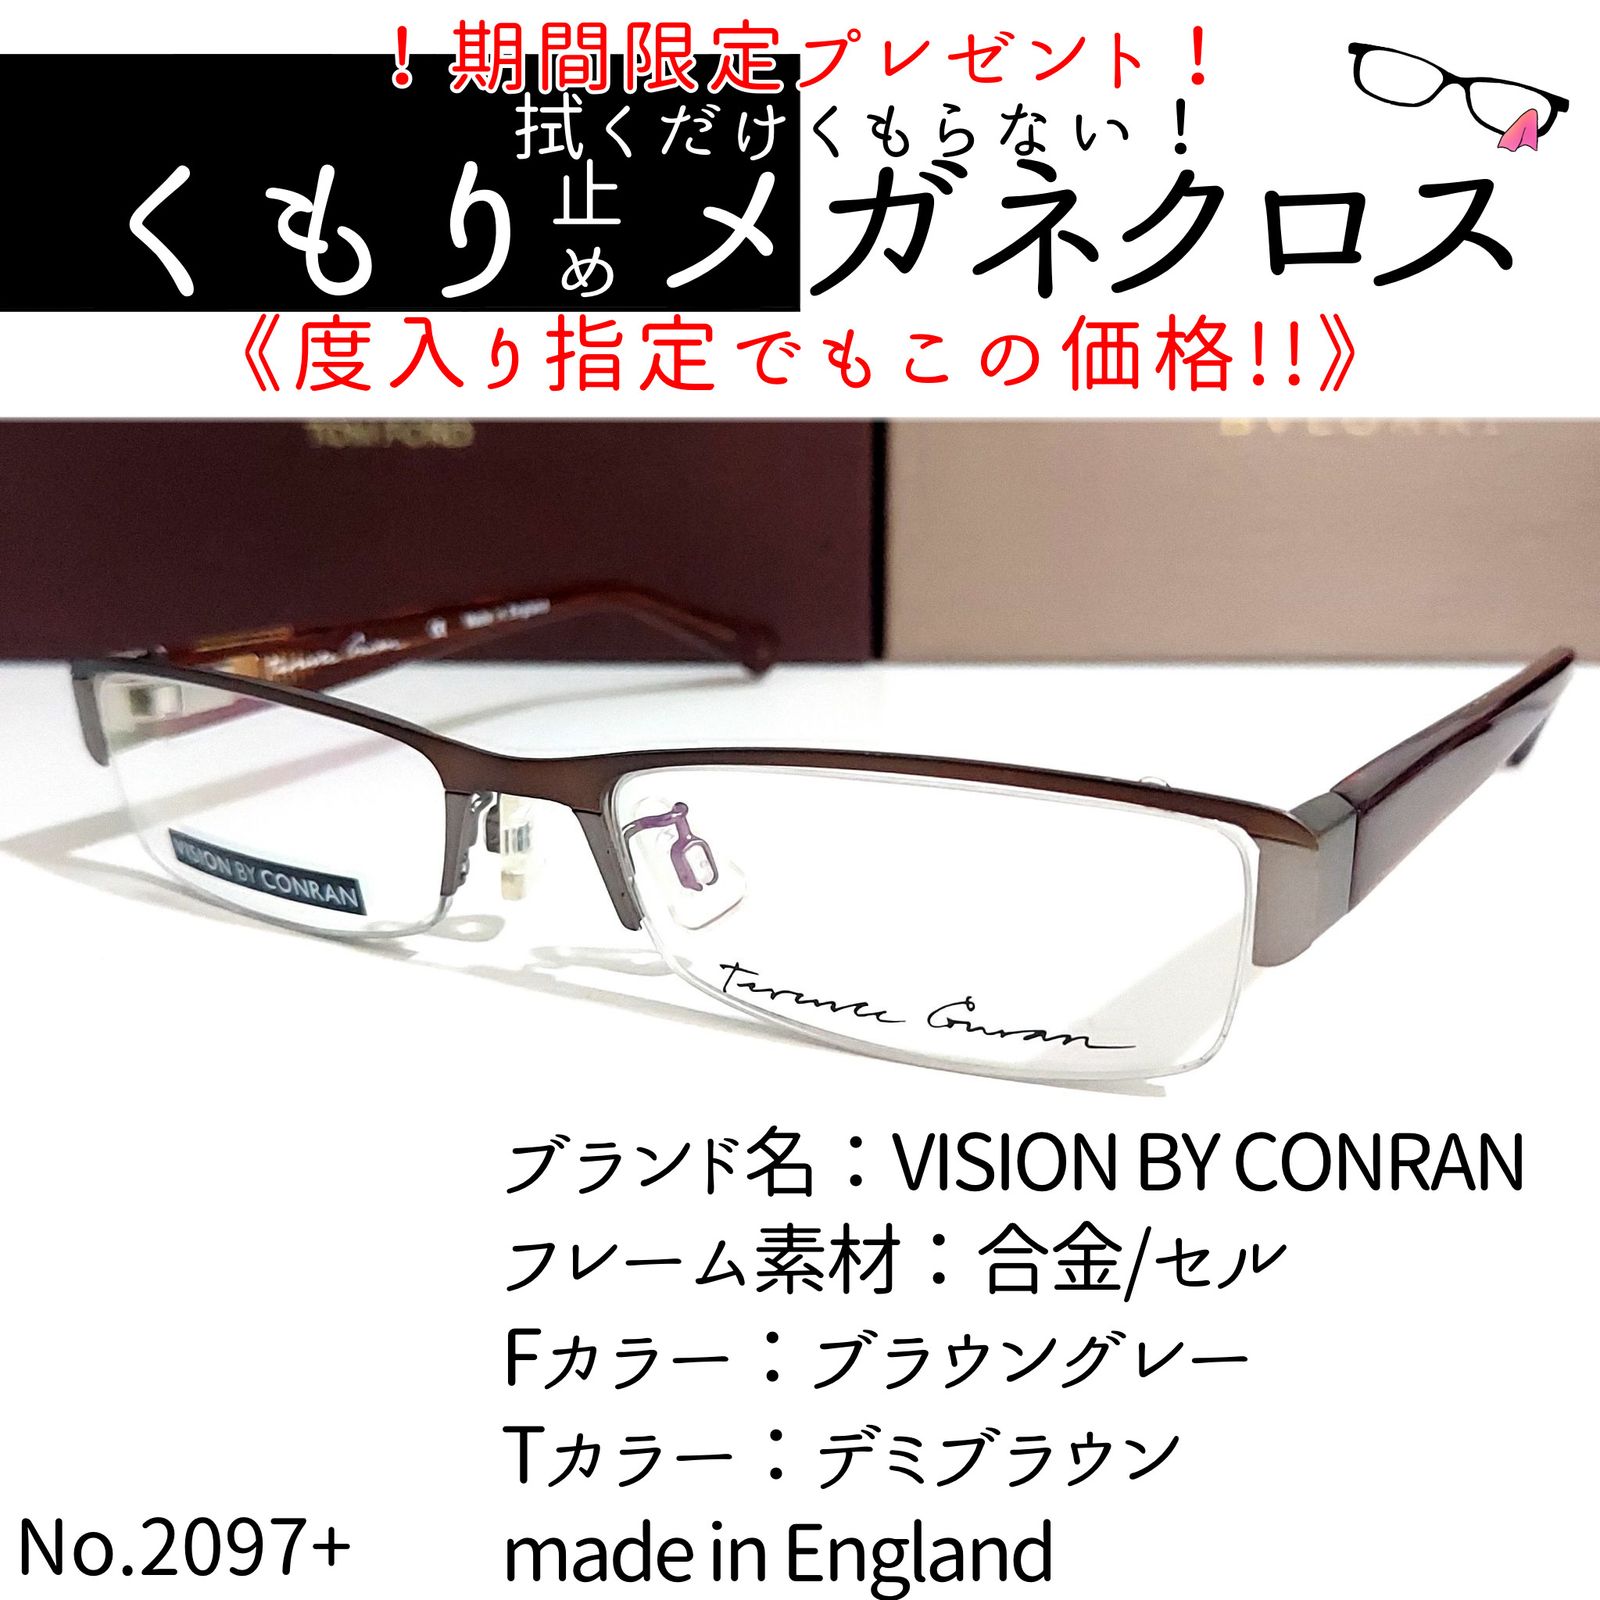 格安販売の No.2097+メガネ VISION BY CONRAN【度数入り込み価格